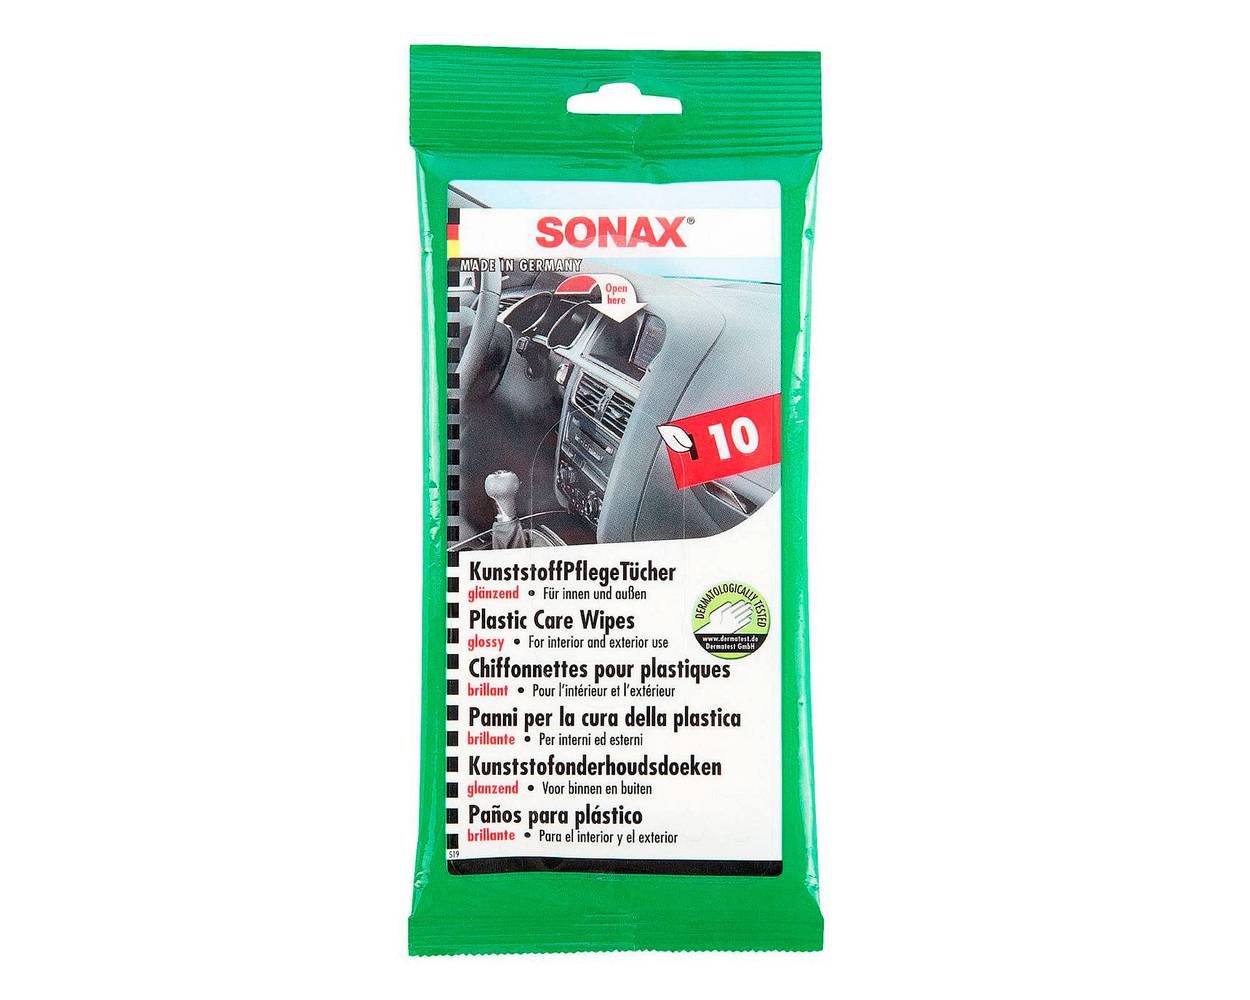 Sonax (toallitas húmedas para plástico, 10 unidades)